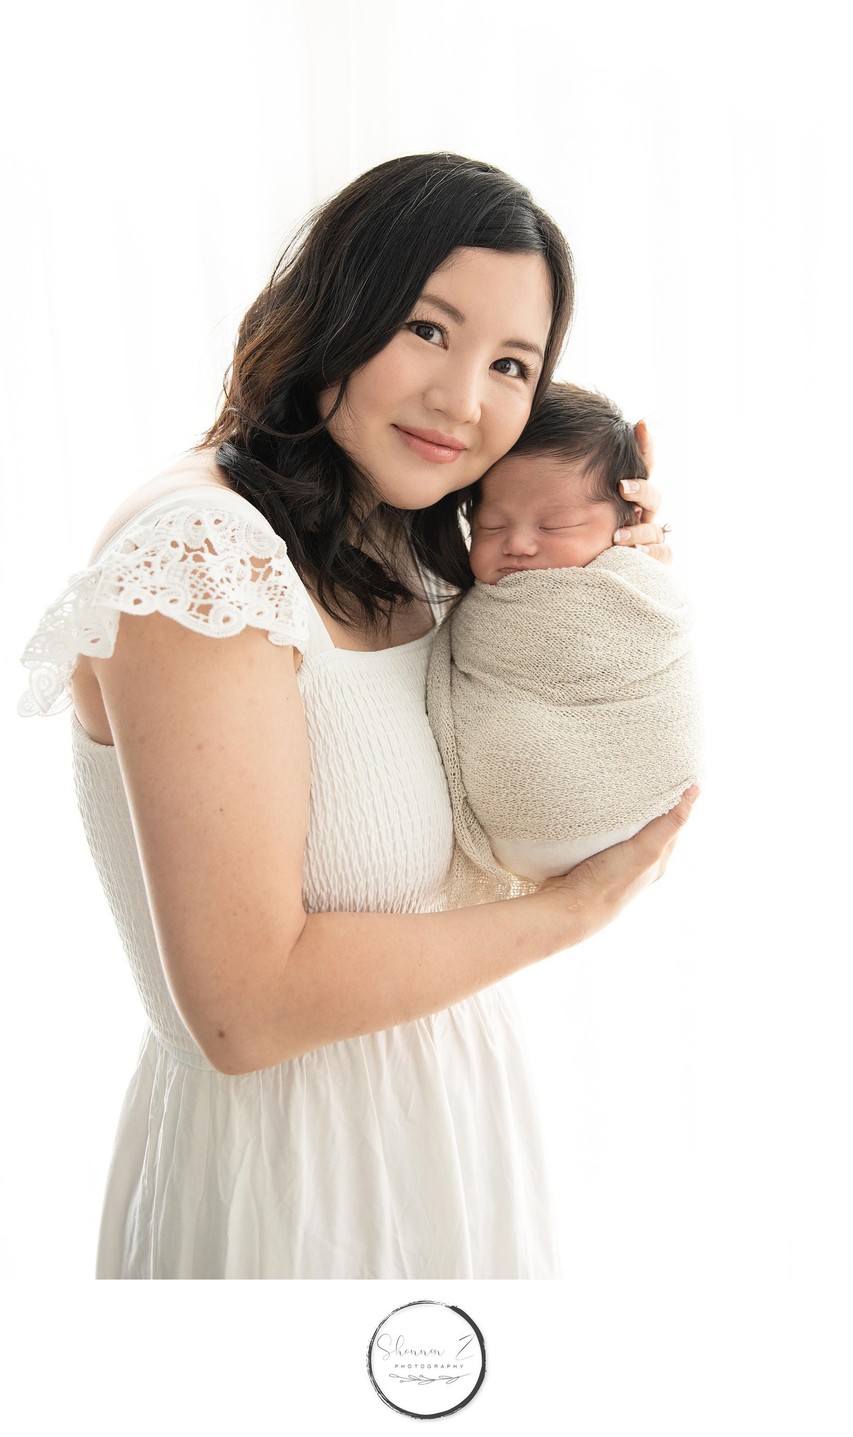 Mammas boy : Kenosha Newborn Studio